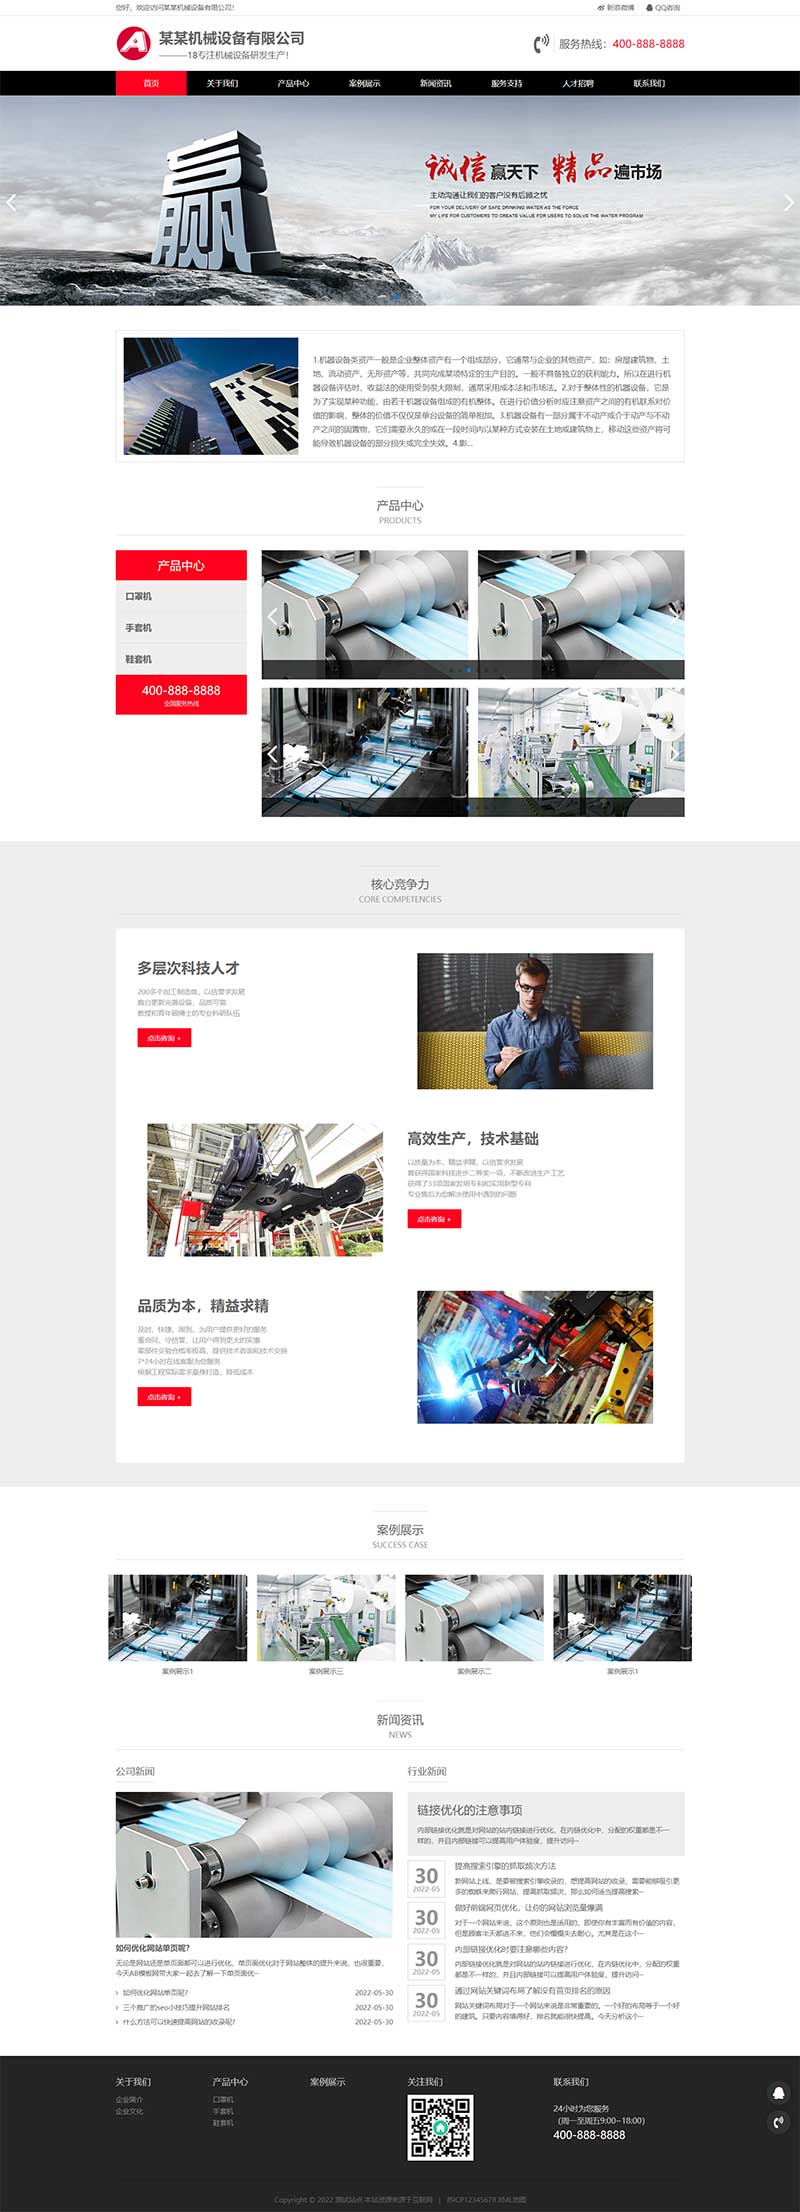 (自适应移动端)html5响应式浅黑色工业设备生产制造企业网站电脑端模板展示图片